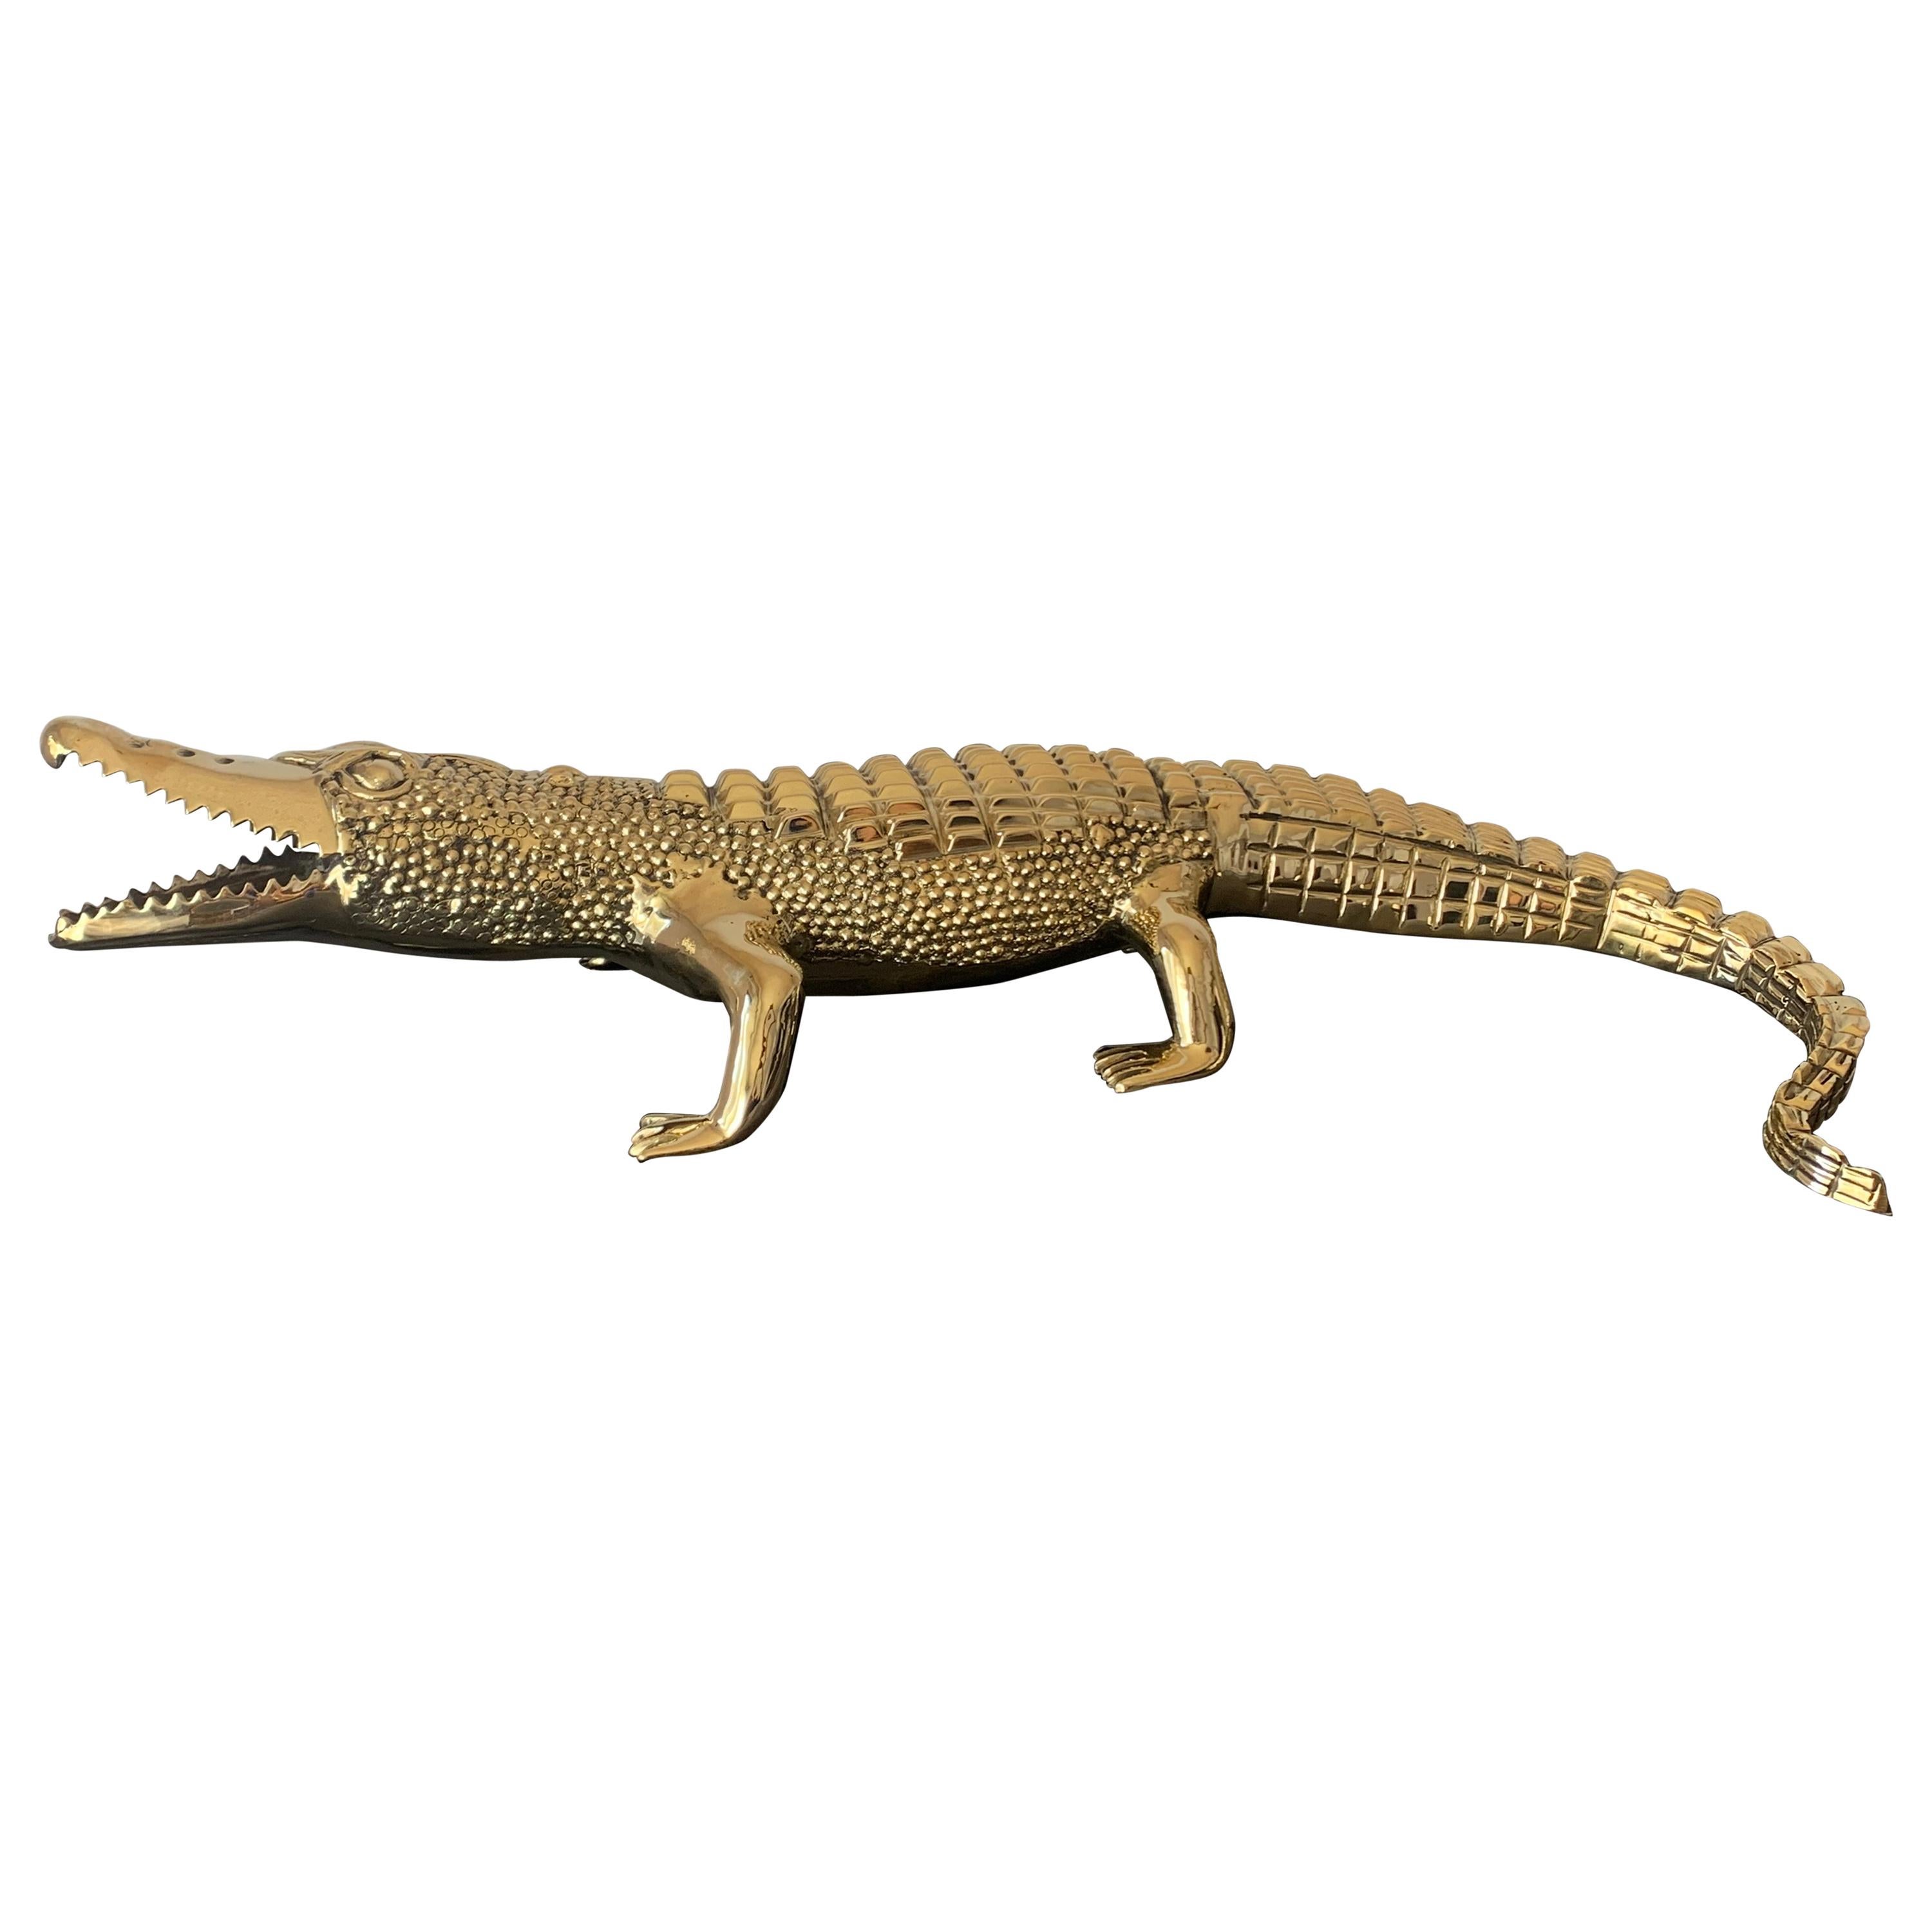 Brass Crocodile or Alligator Sculpture Pet